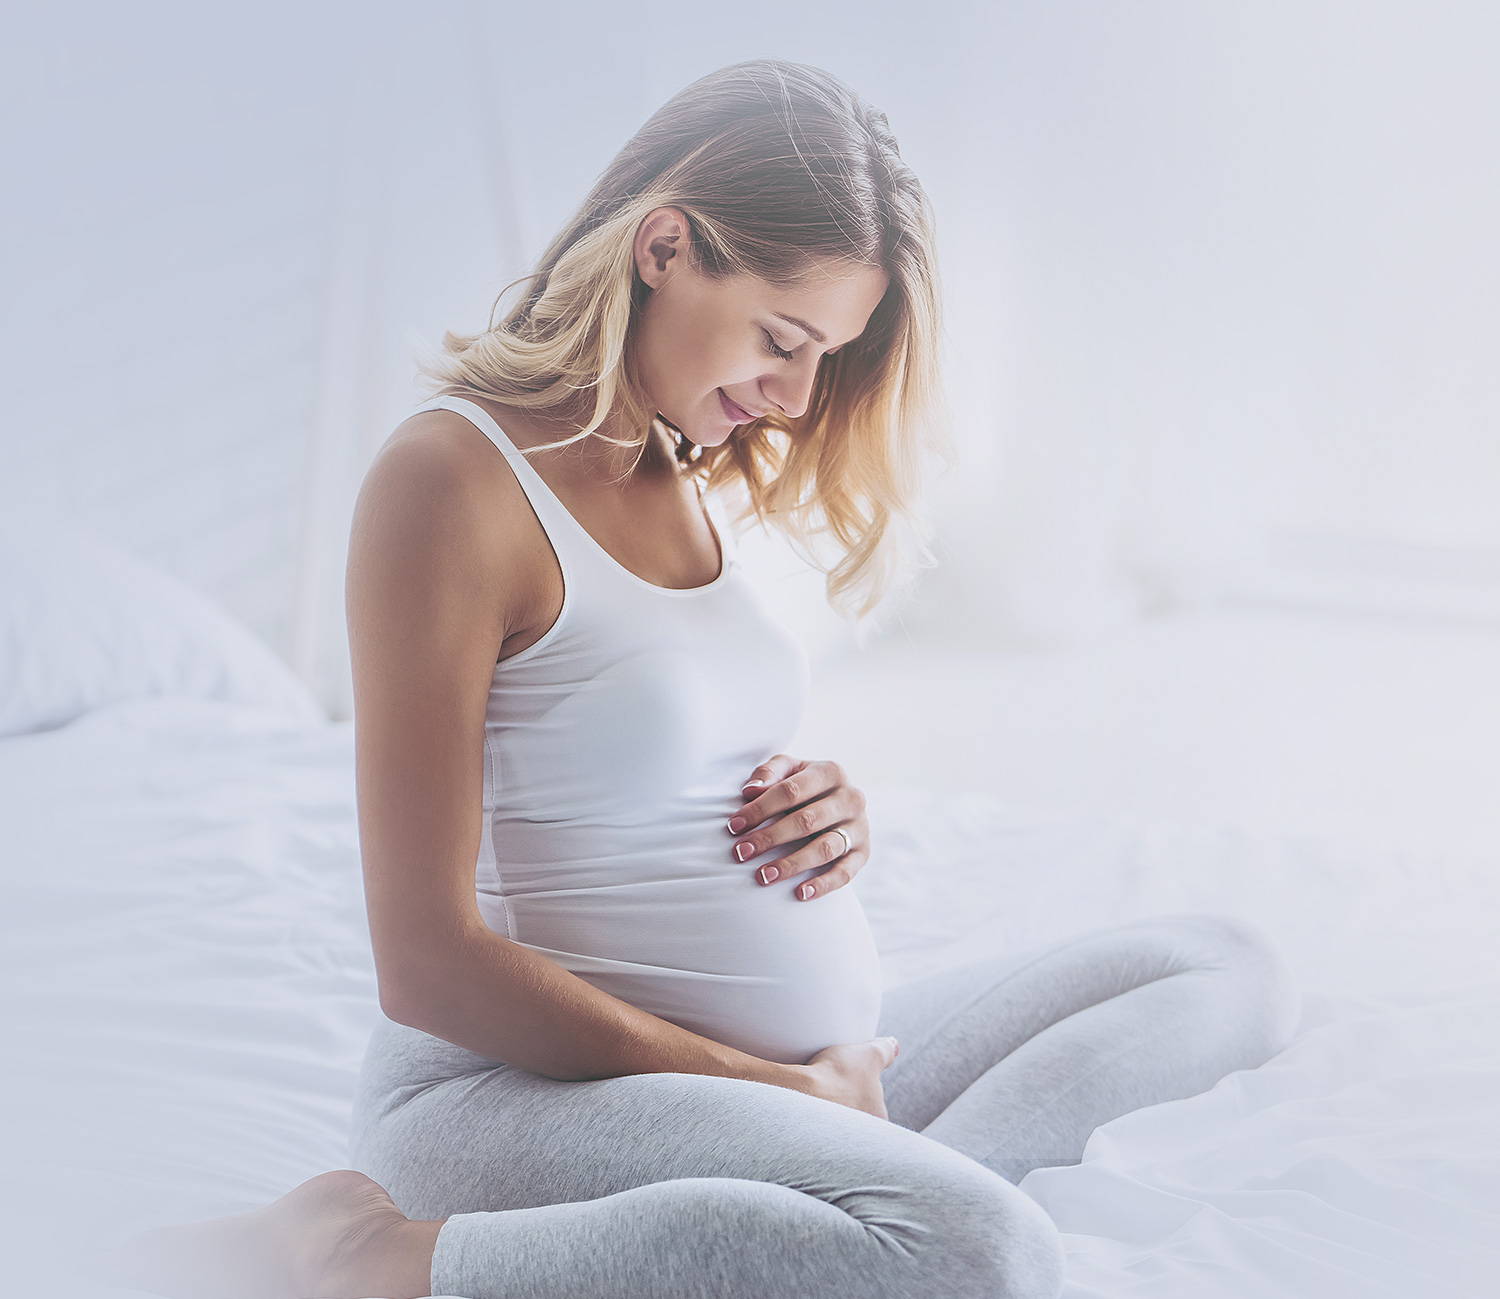 Pregnancy and constipation â Probio7